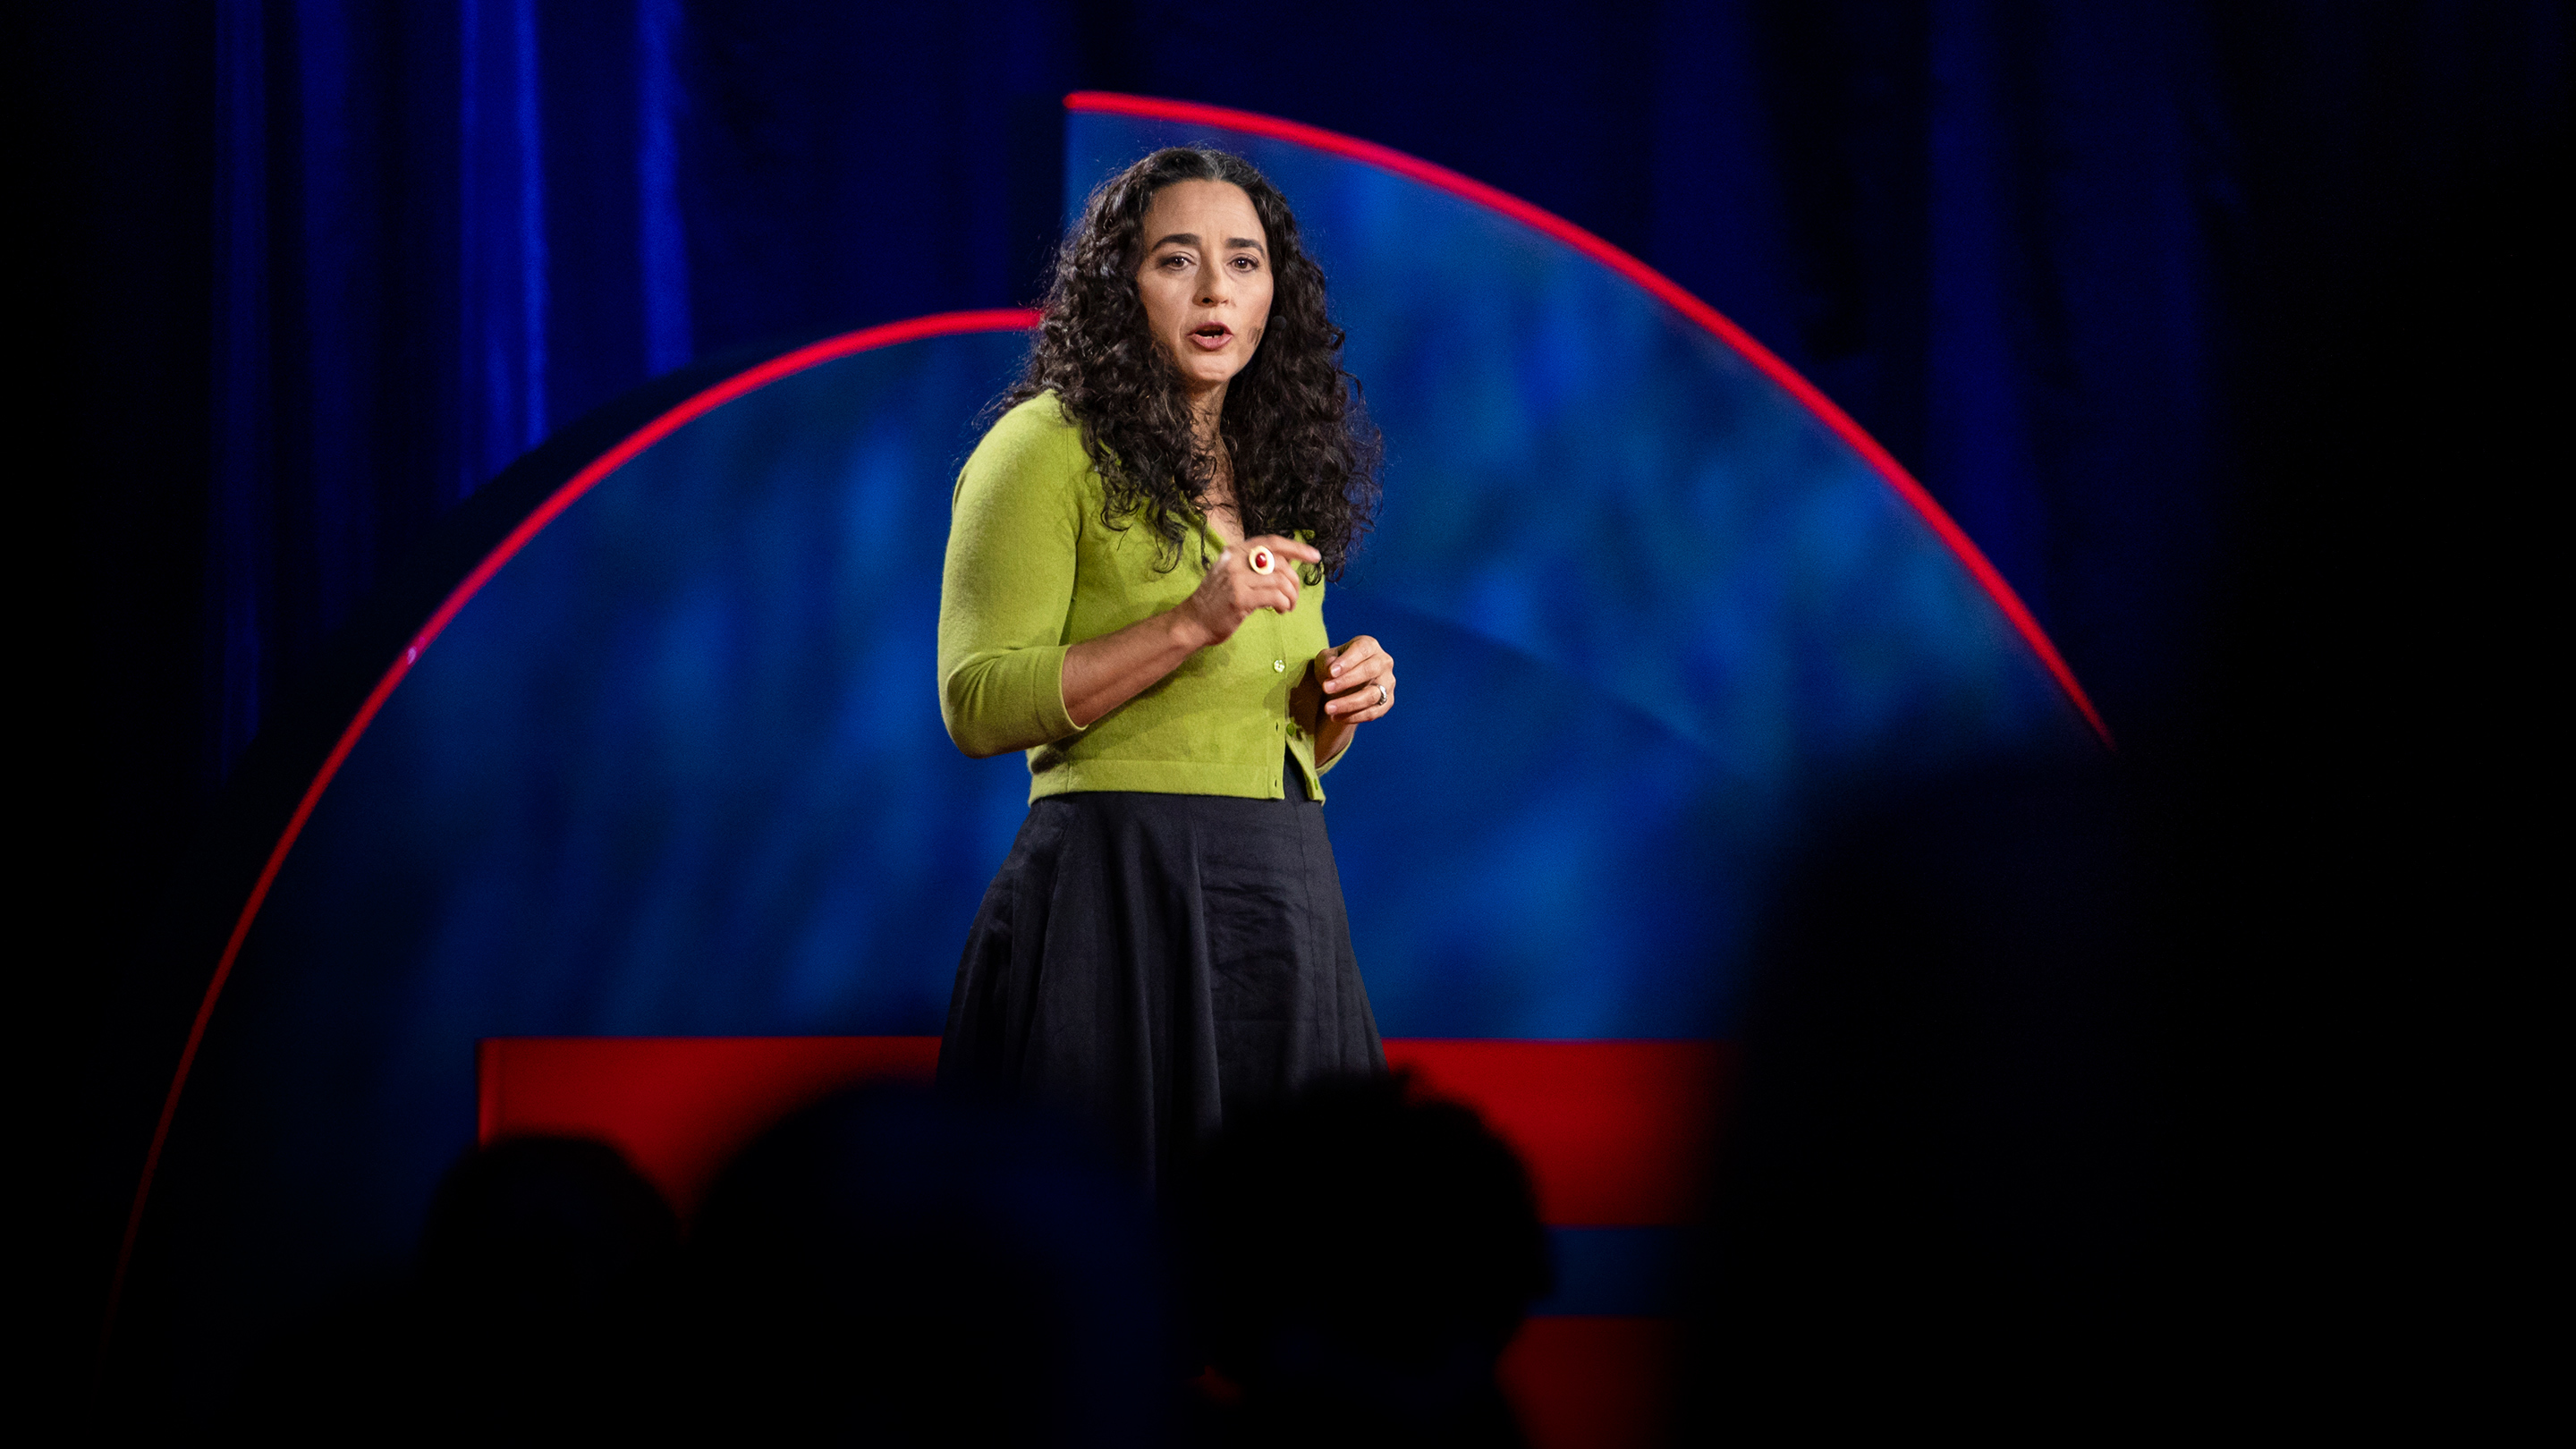 TEDWomen | The Power of Women’s Anger